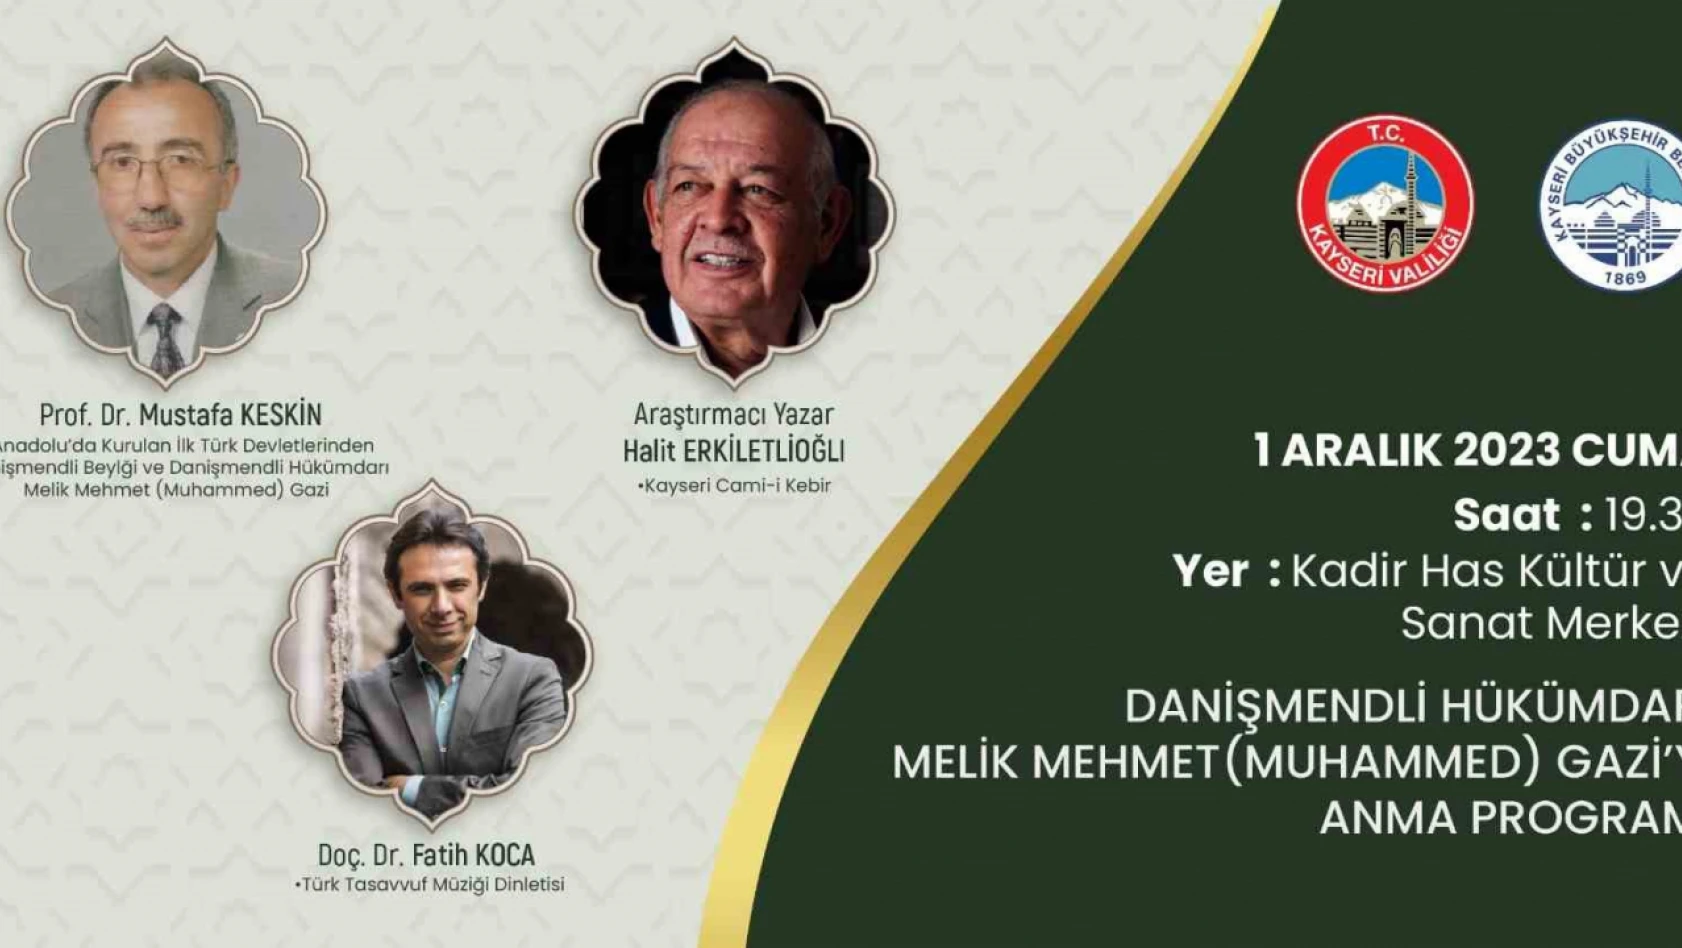 Hükümdar Melik Mehmet Gazi'yi anma programı düzenlenecek